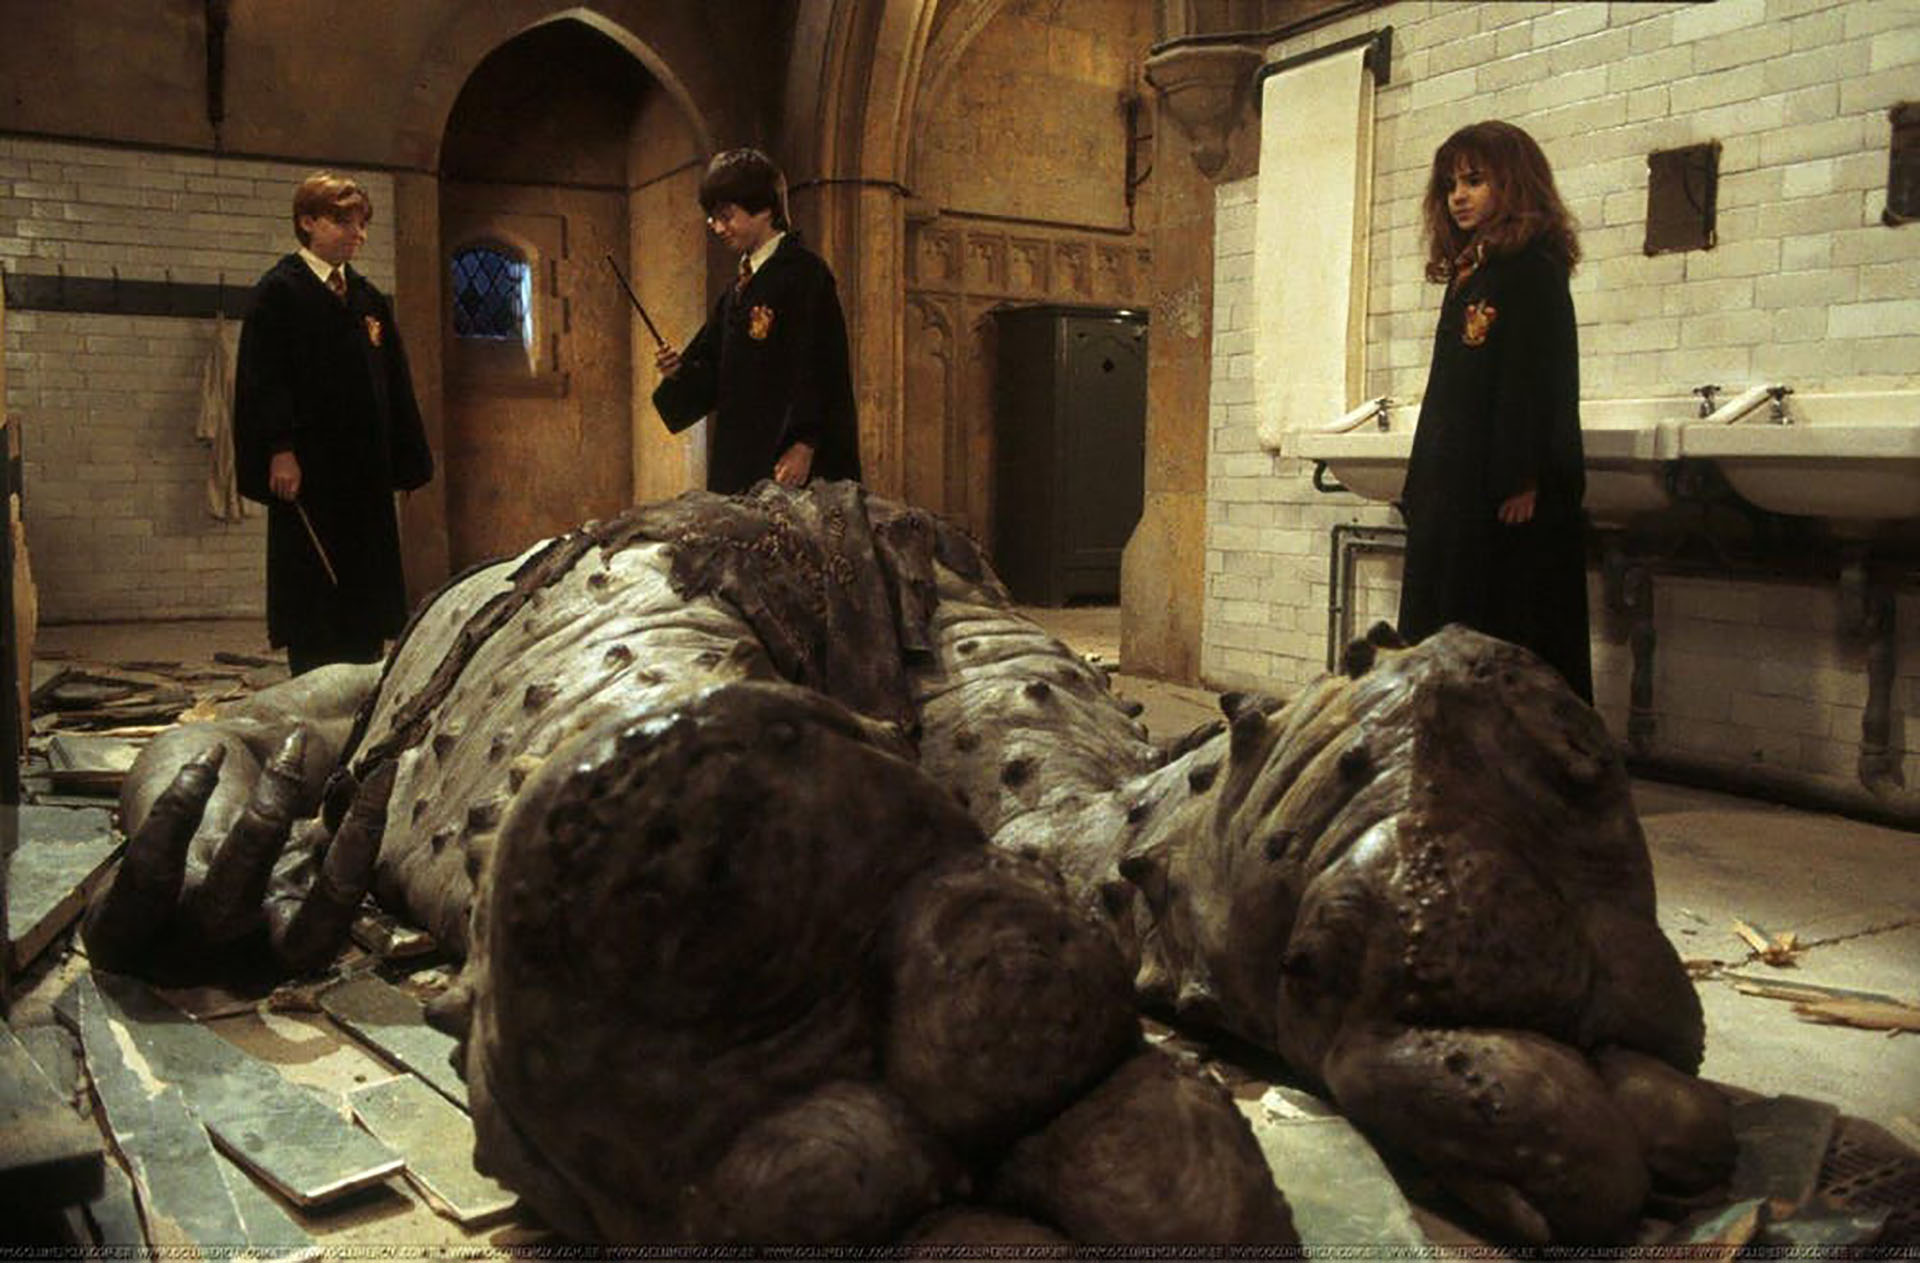 Fotograma de "Harry Potter y la piedra filosofal", con Ron, Harry, Hermione y el trol. Filmaffinity
